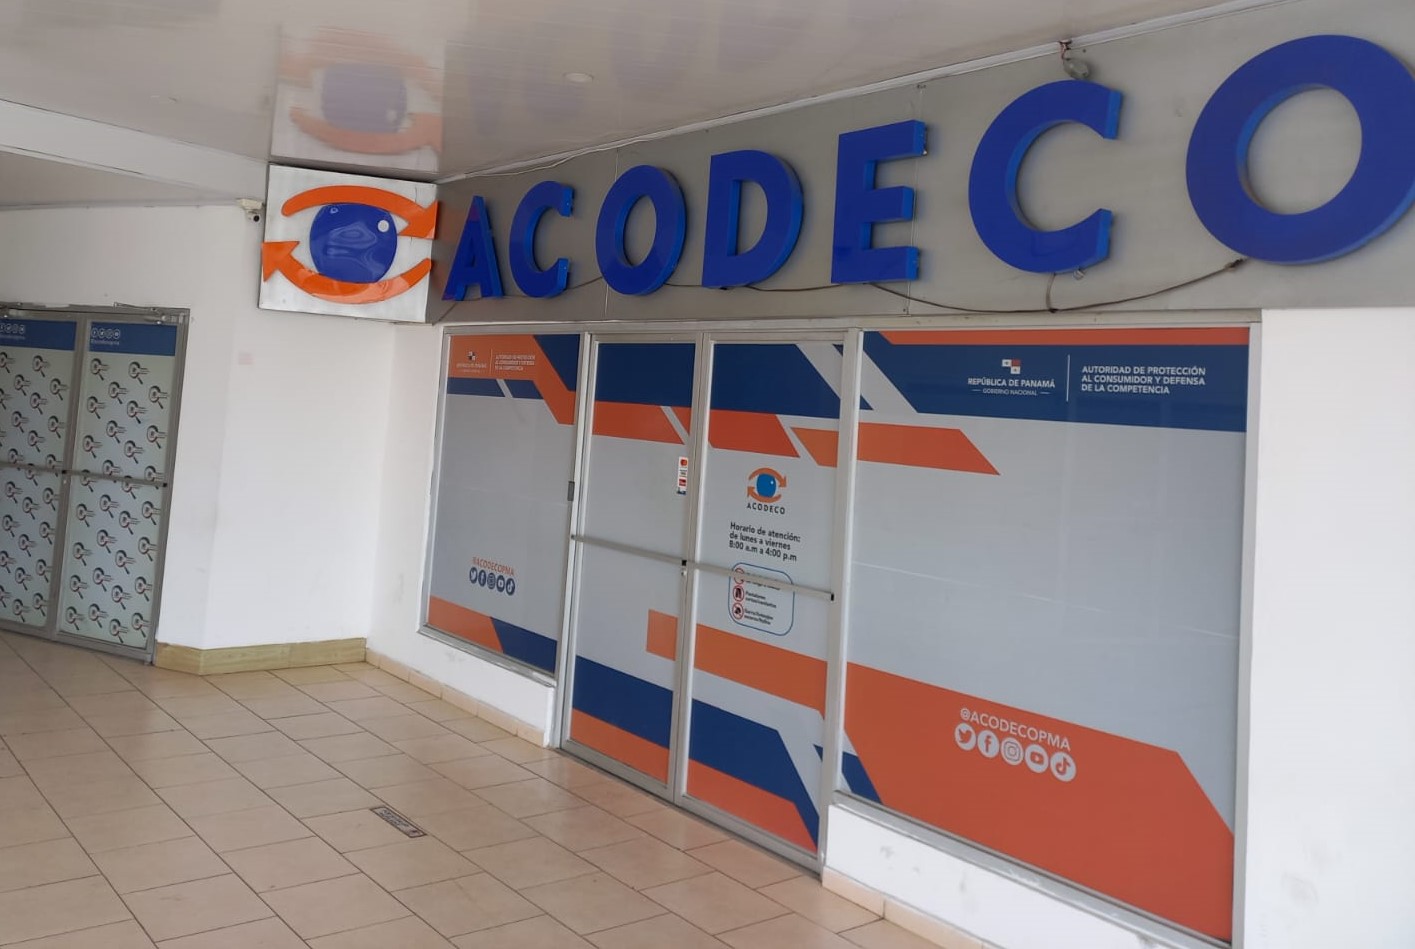 ACODECO recauda $3.2 millones en multas no pagadas